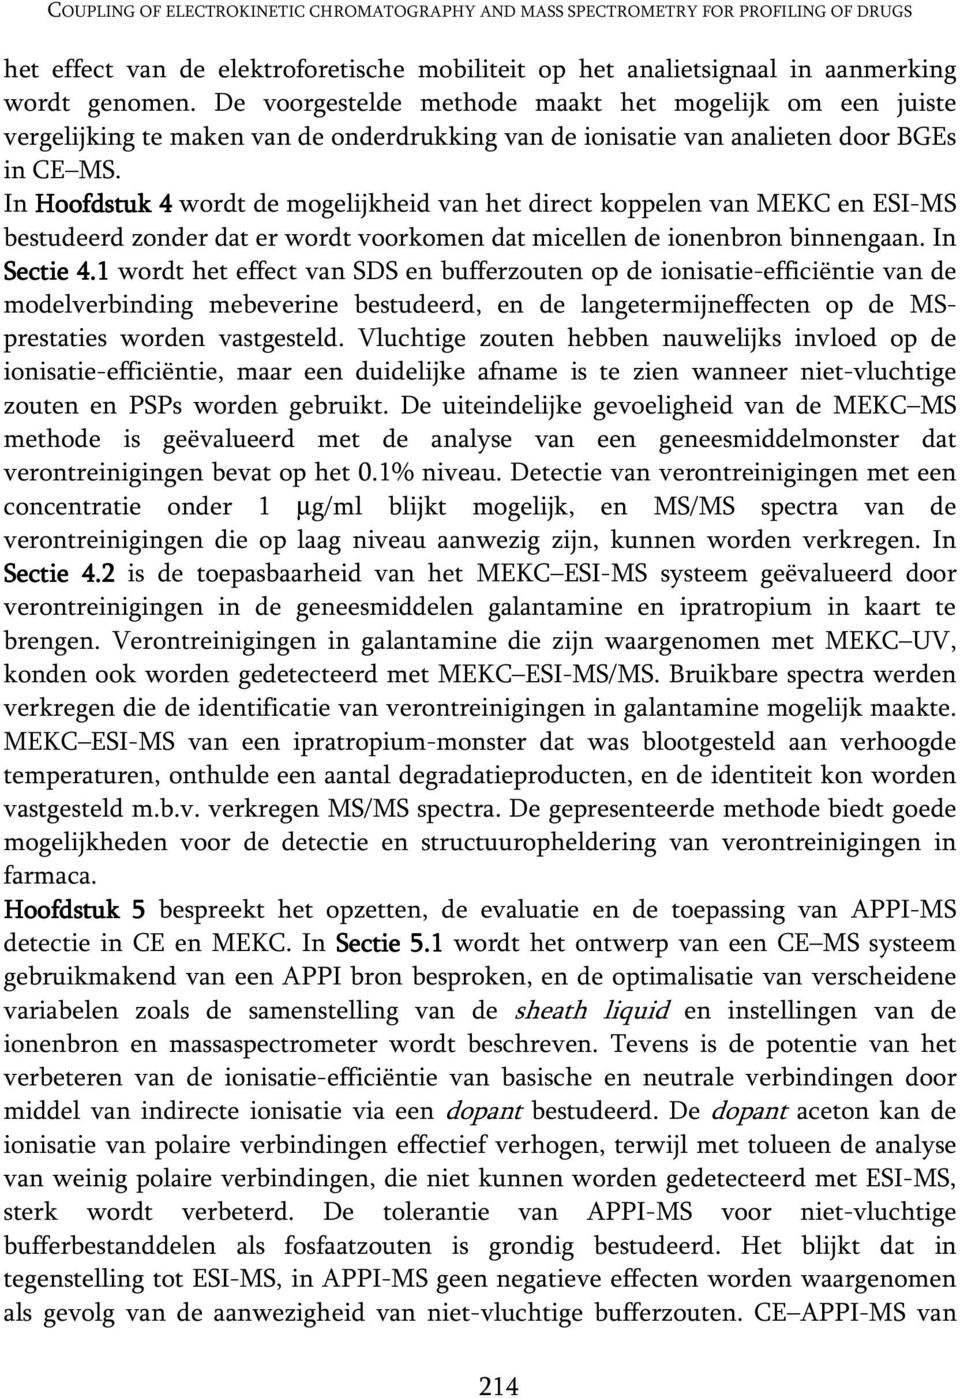 In Hoofdstuk 4 wordt de mogelijkheid van het direct koppelen van MEKC en ESI-MS bestudeerd zonder dat er wordt voorkomen dat micellen de ionenbron binnengaan. In Sectie 4.